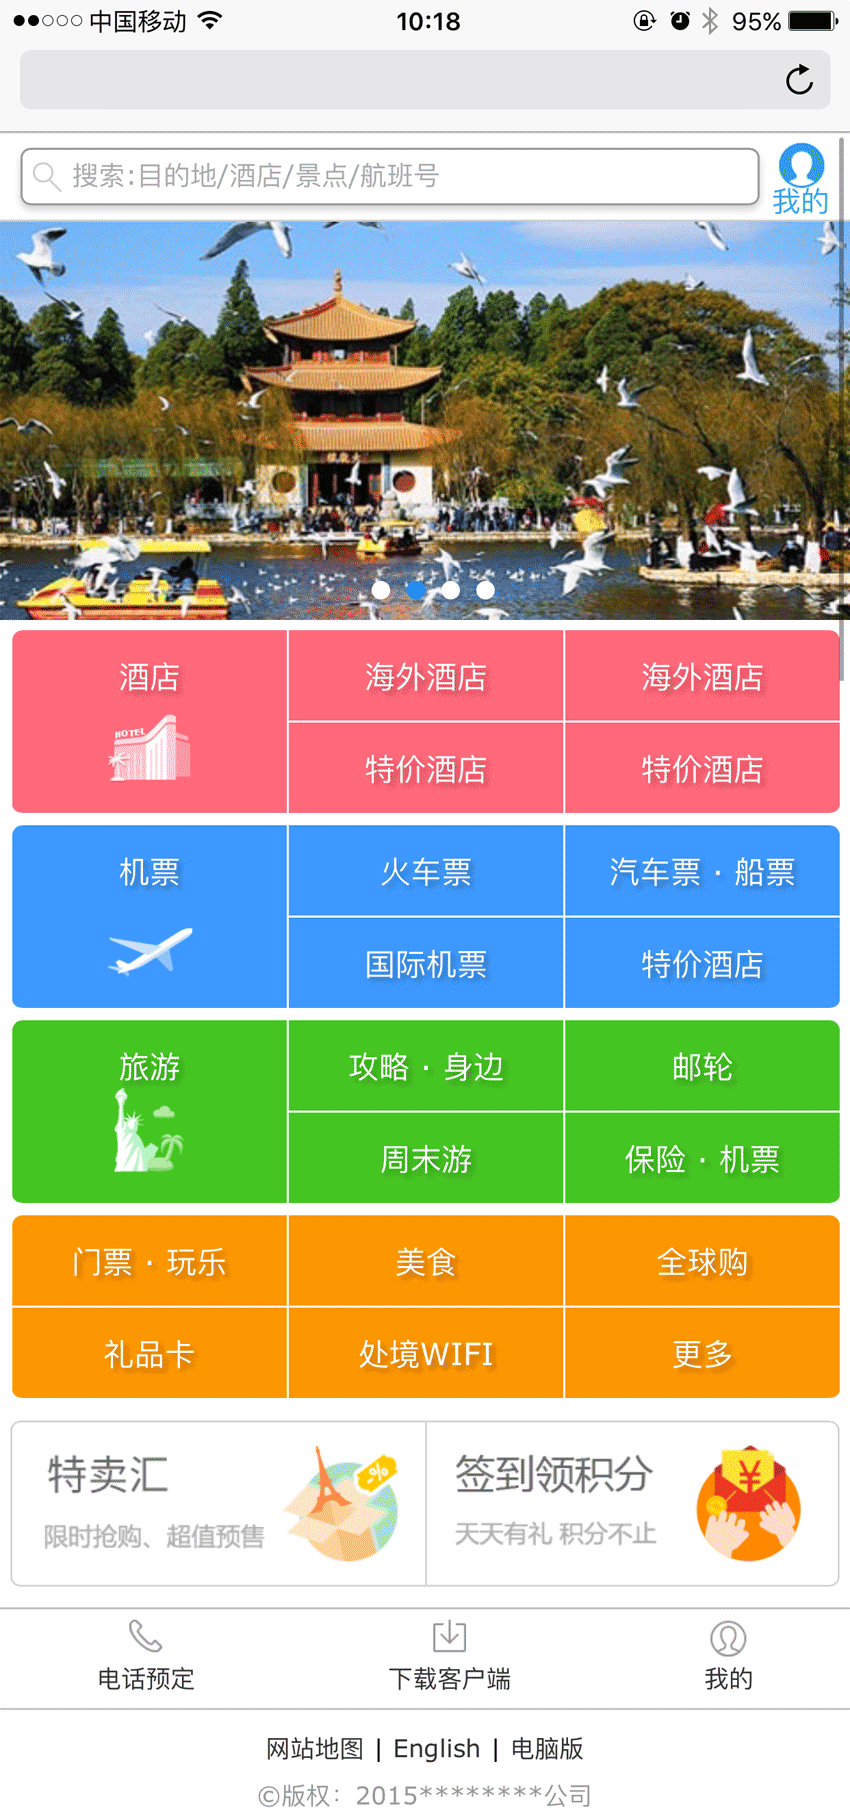 仿携程手机站旅游wap页面模板(图1)